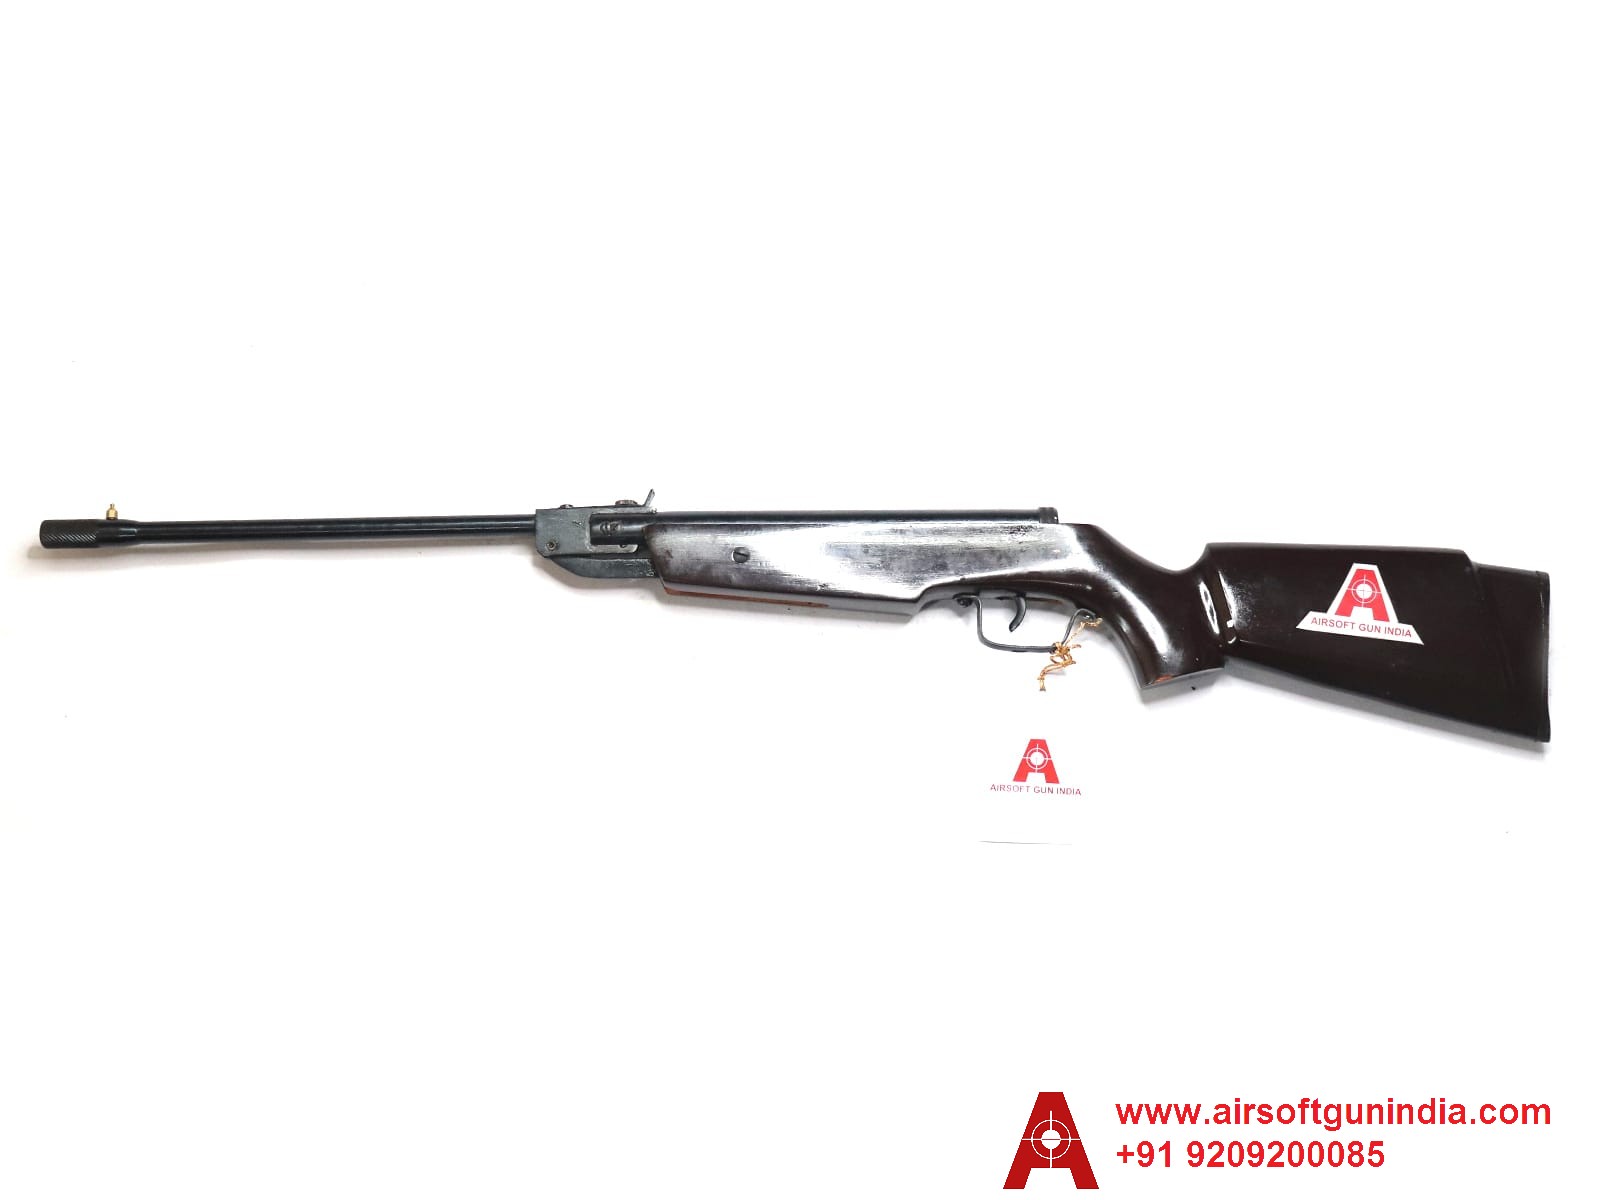 Basic .177 Air Rifle Dark Brown By Airsoft Gun India